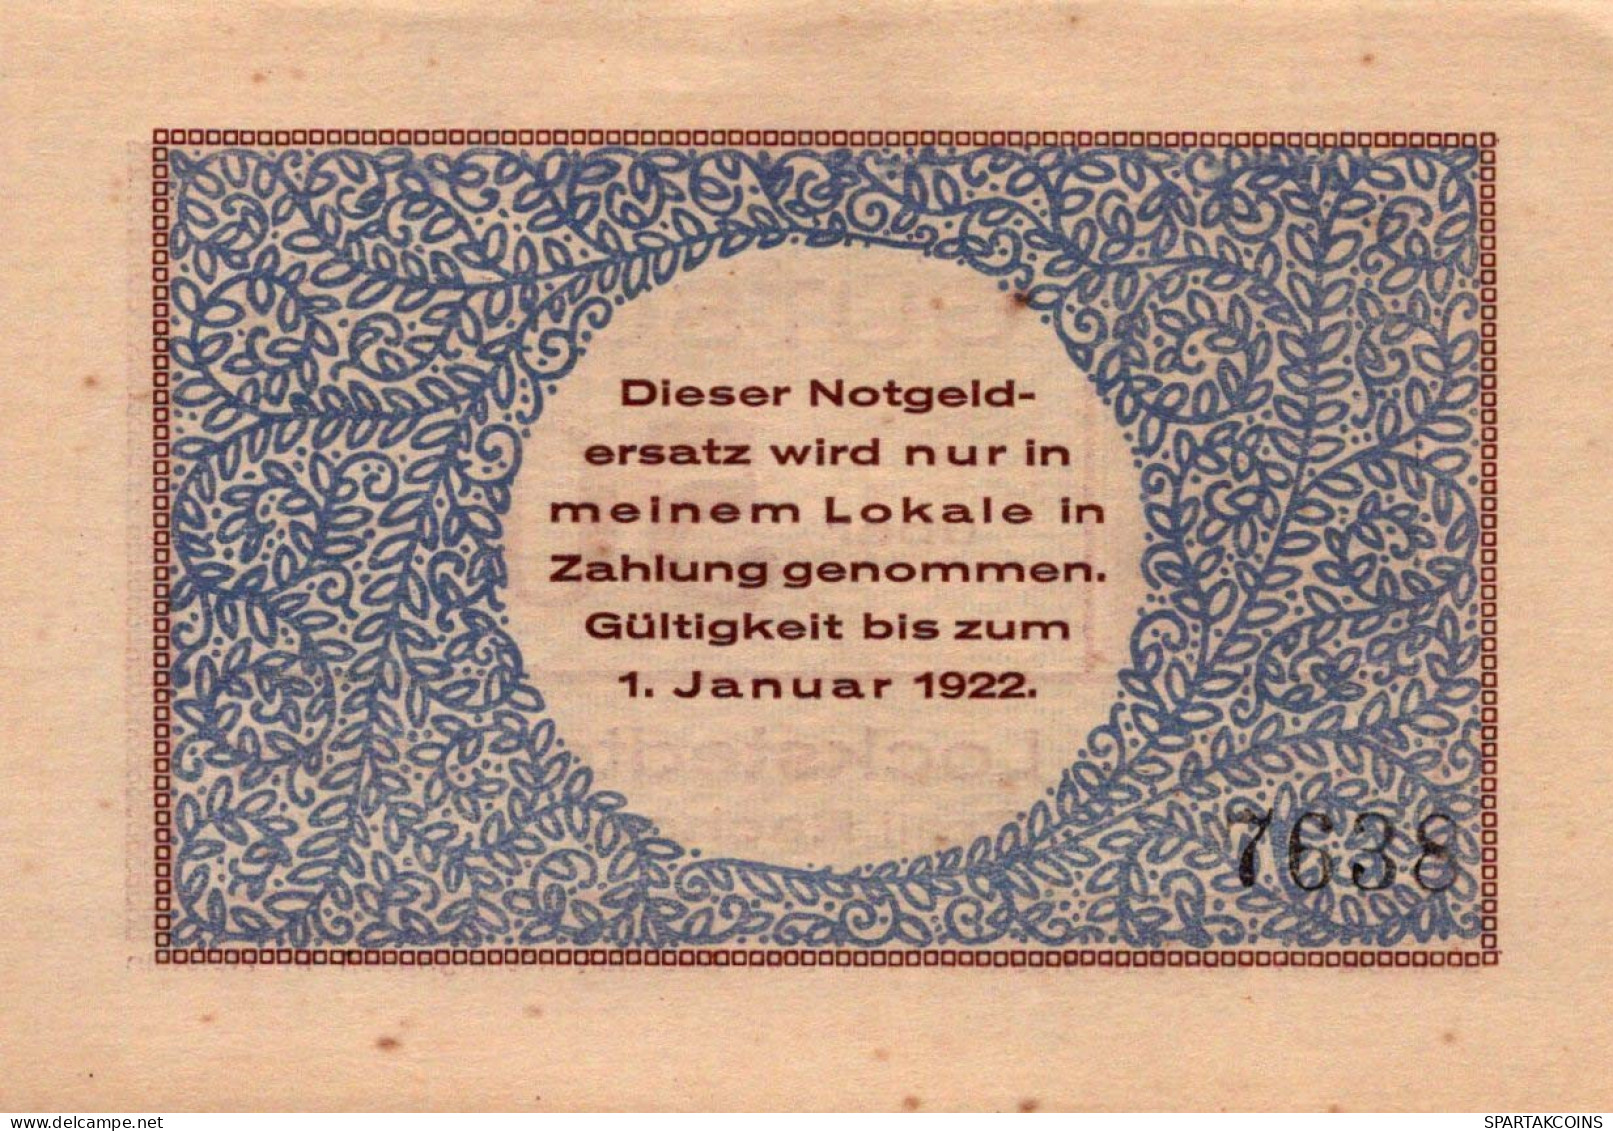 50 PFENNIG 1922 Stadt KUMMERFELD Schleswig-Holstein UNC DEUTSCHLAND #PC498 - Lokale Ausgaben